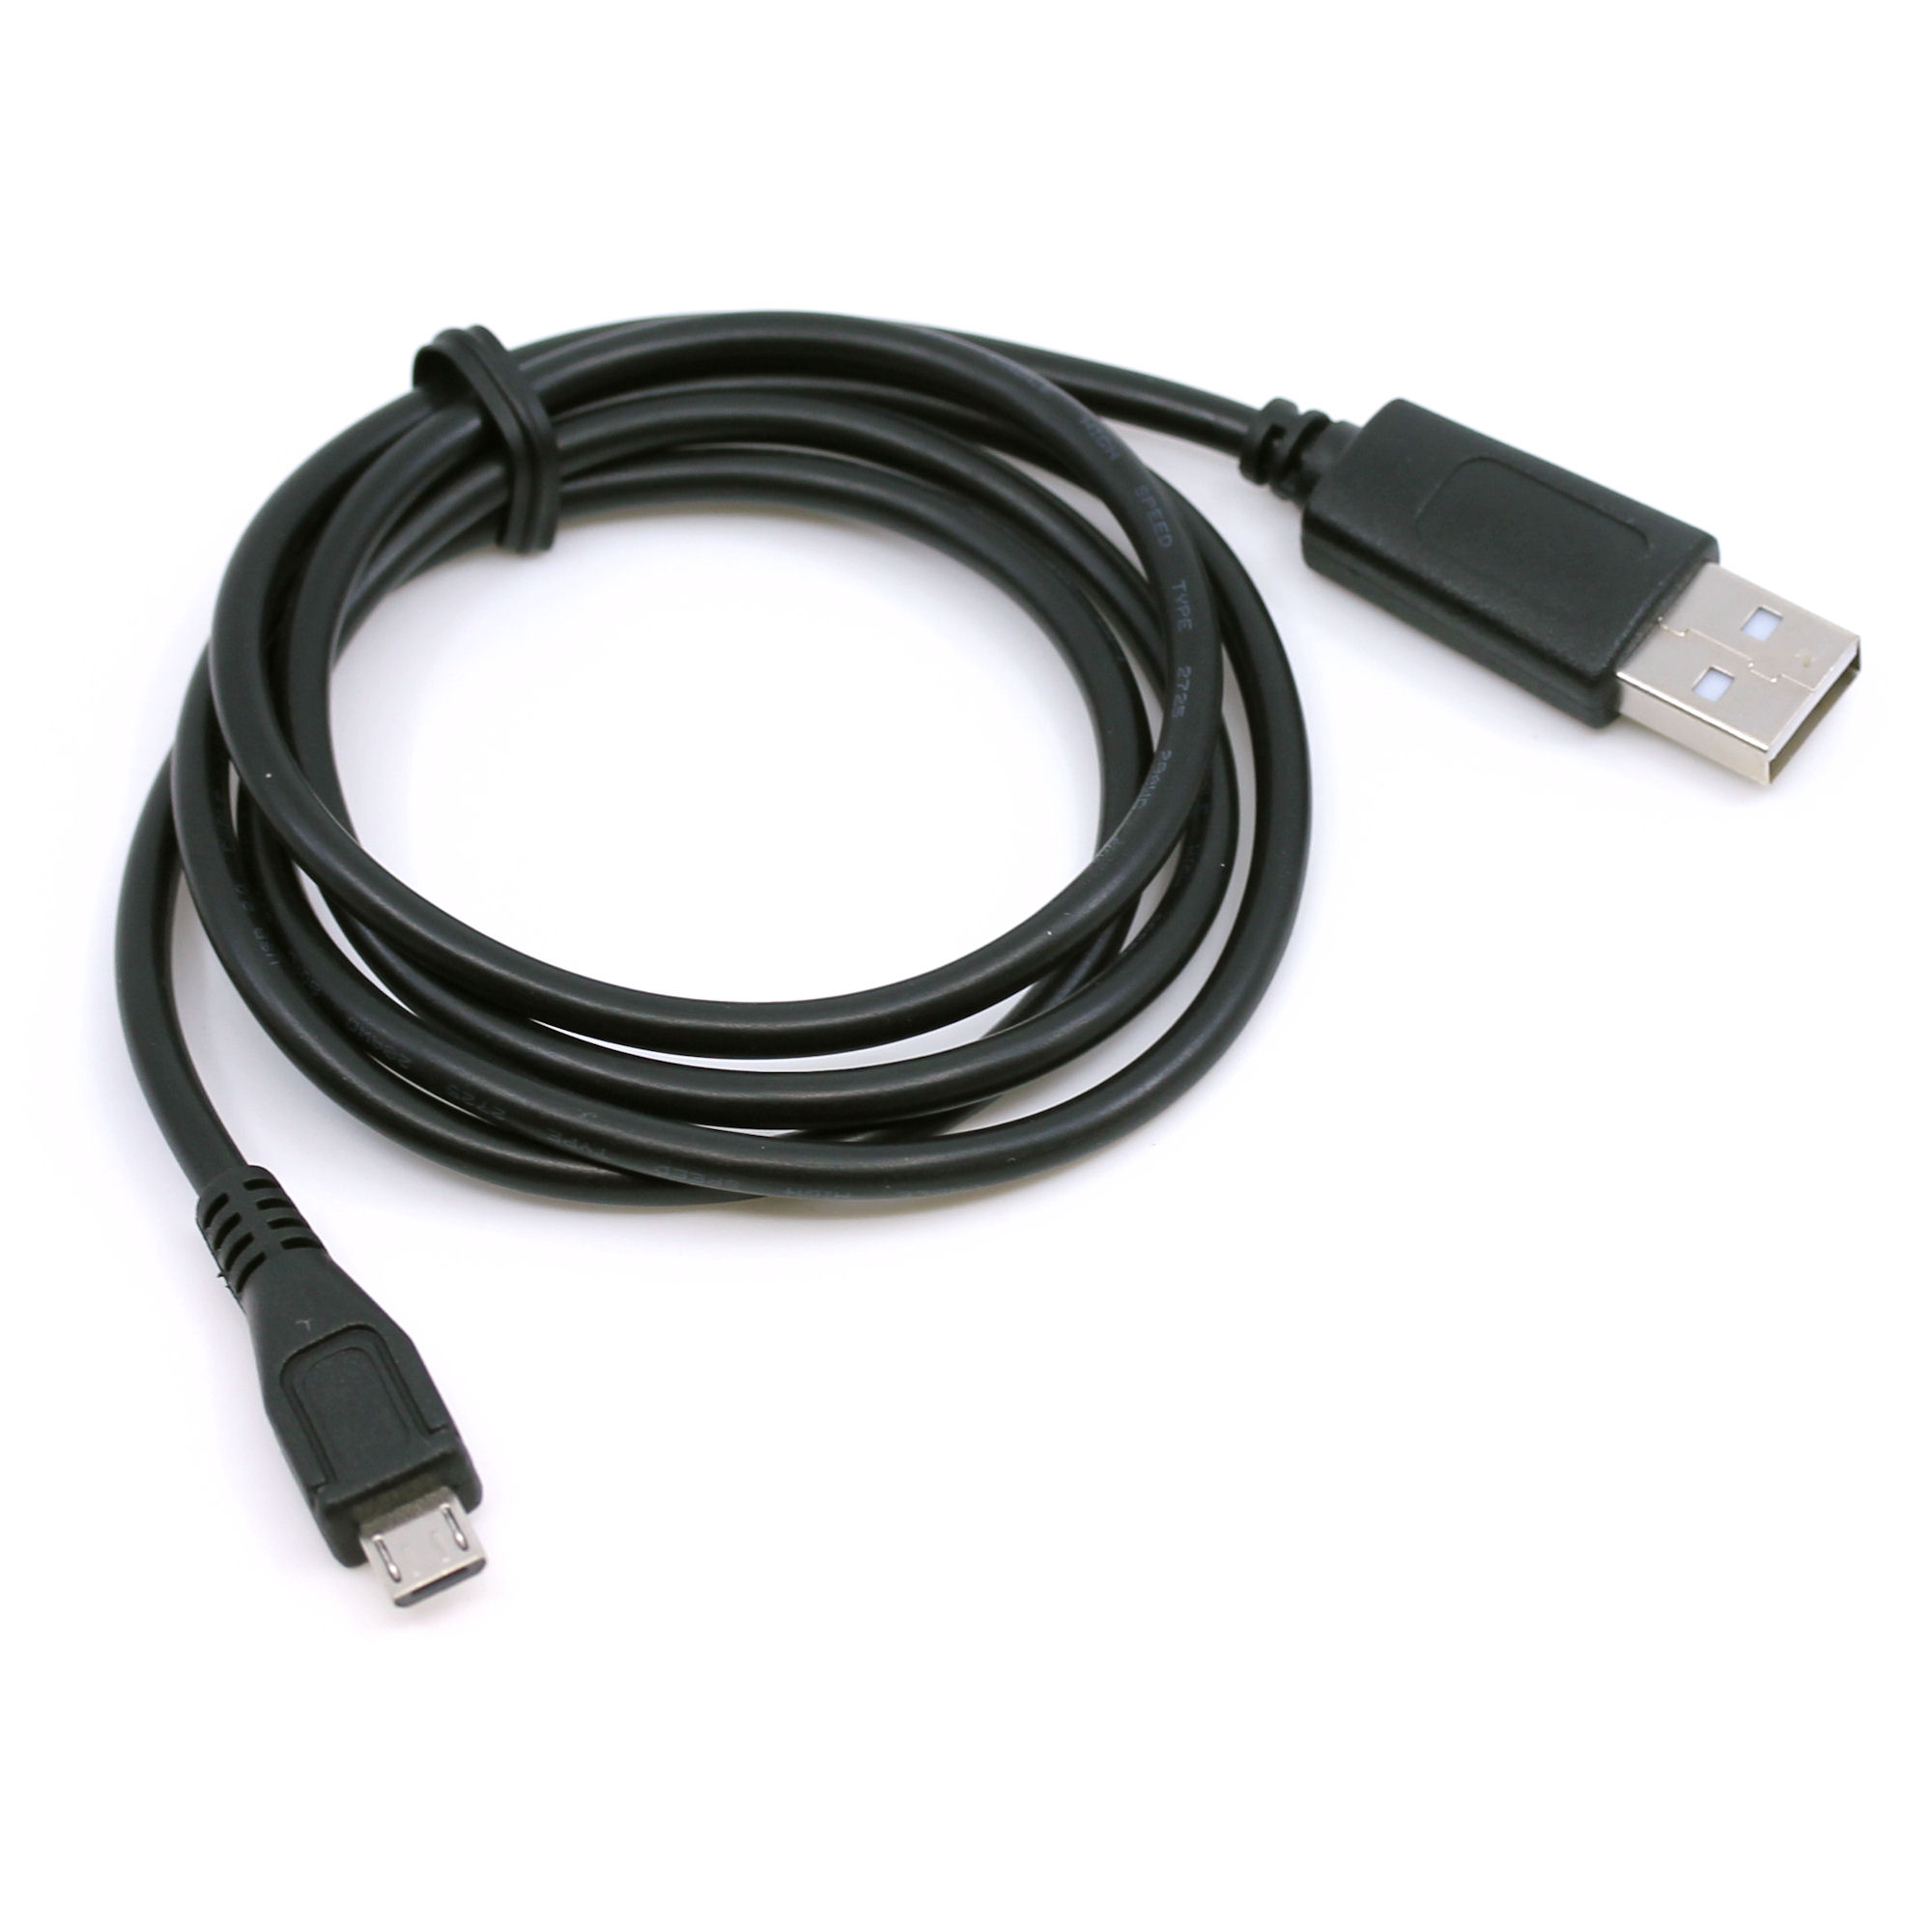 USB Ladekabel für Gigaset GL390, GL590, GS100, GS100H, GS160, GS170, GS180, GS185, QV1030, QV830